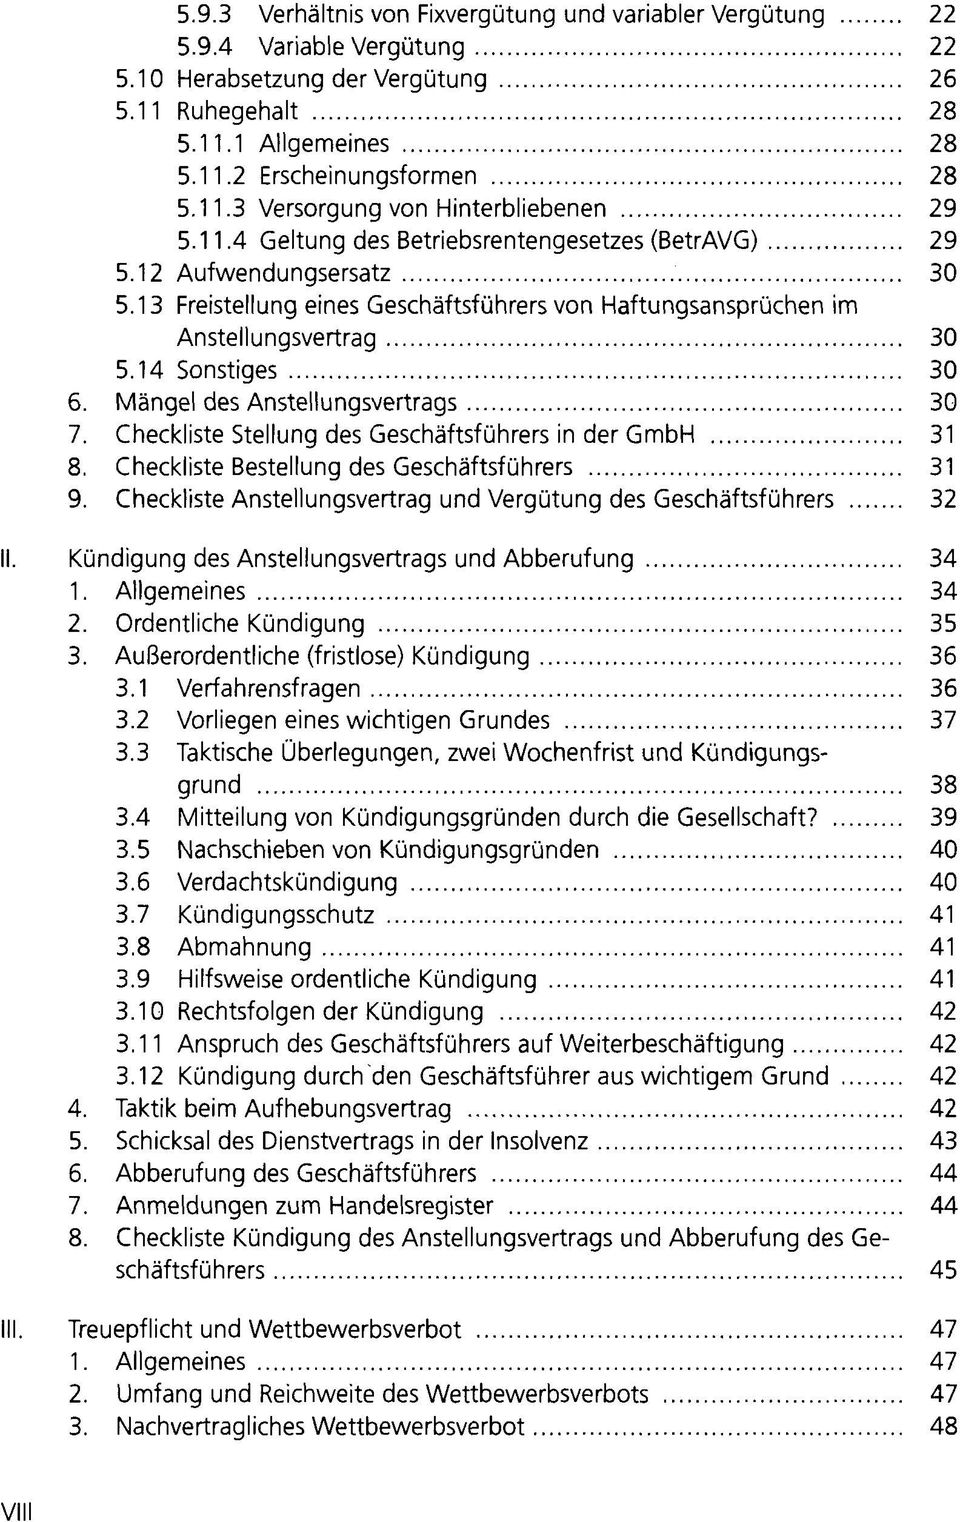 Mängel des Anstellungsvertrags 30 7. Checkliste Stellung des Geschäftsführers in der GmbH 31 8. Checkliste Bestellung des Geschäftsführers 31 9.